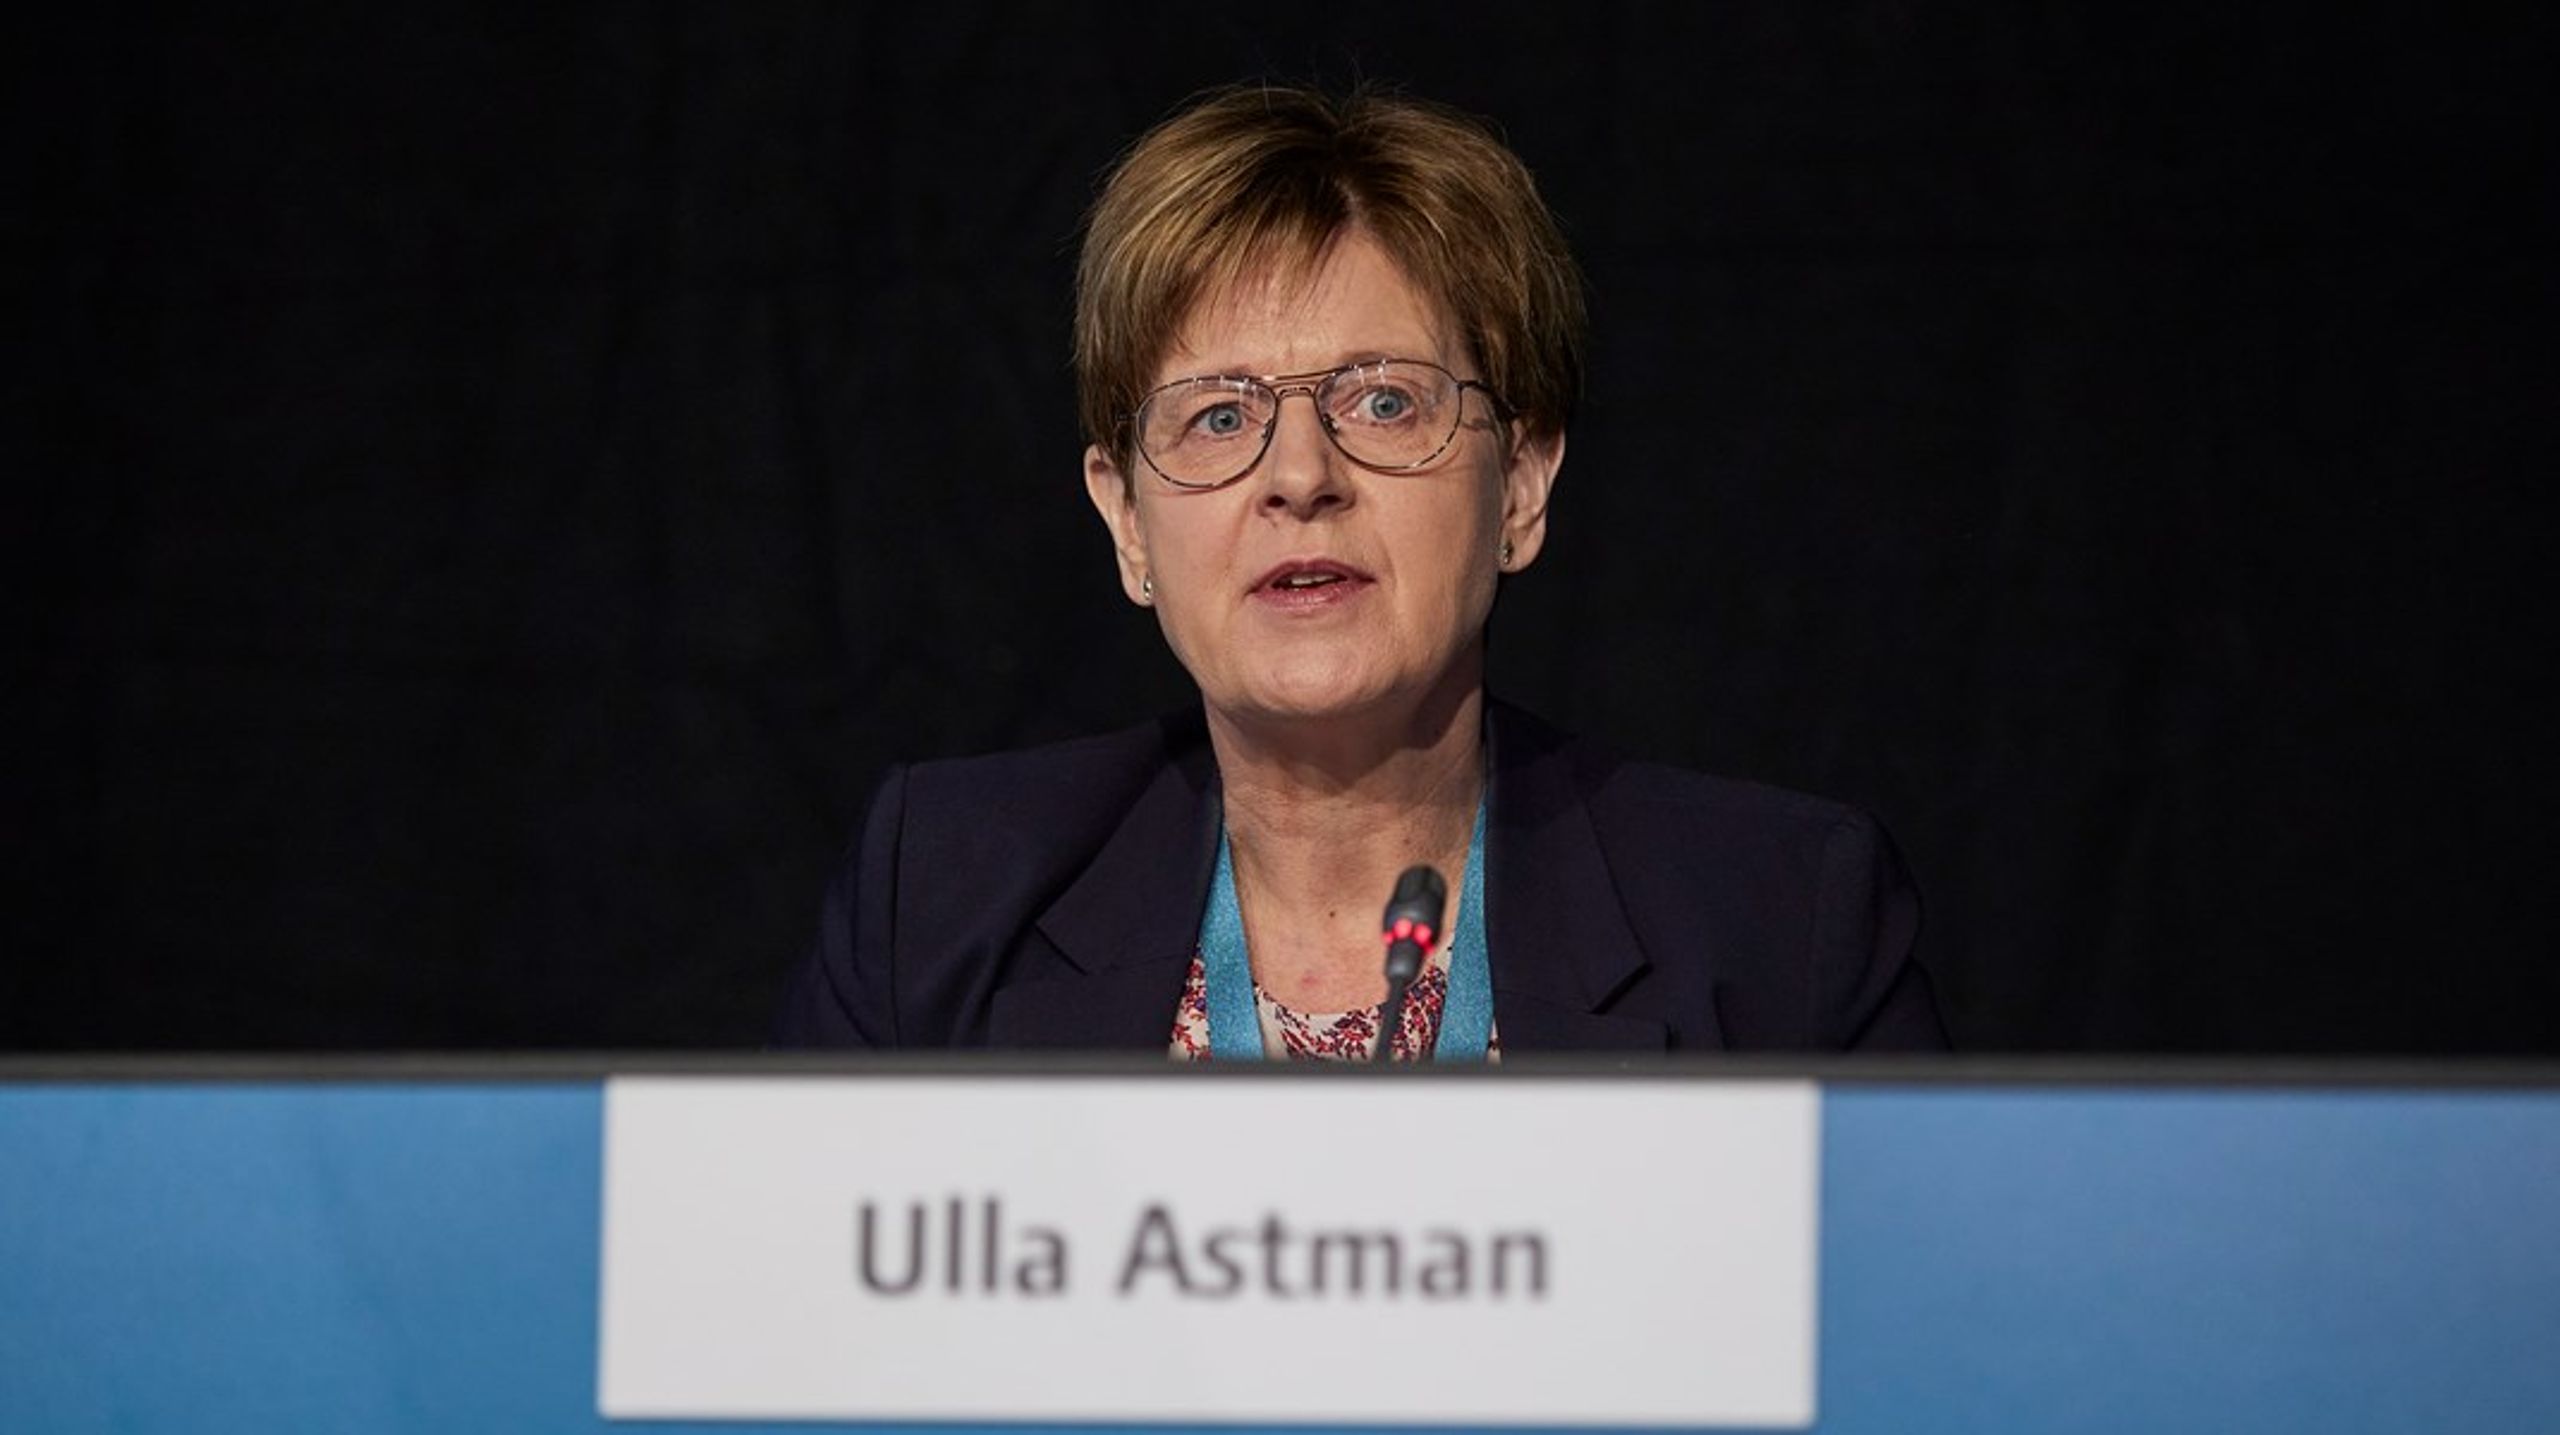 Ulla Astman stopper i dansk regionsrådspolitik efter over to årtier som folkevalgt.